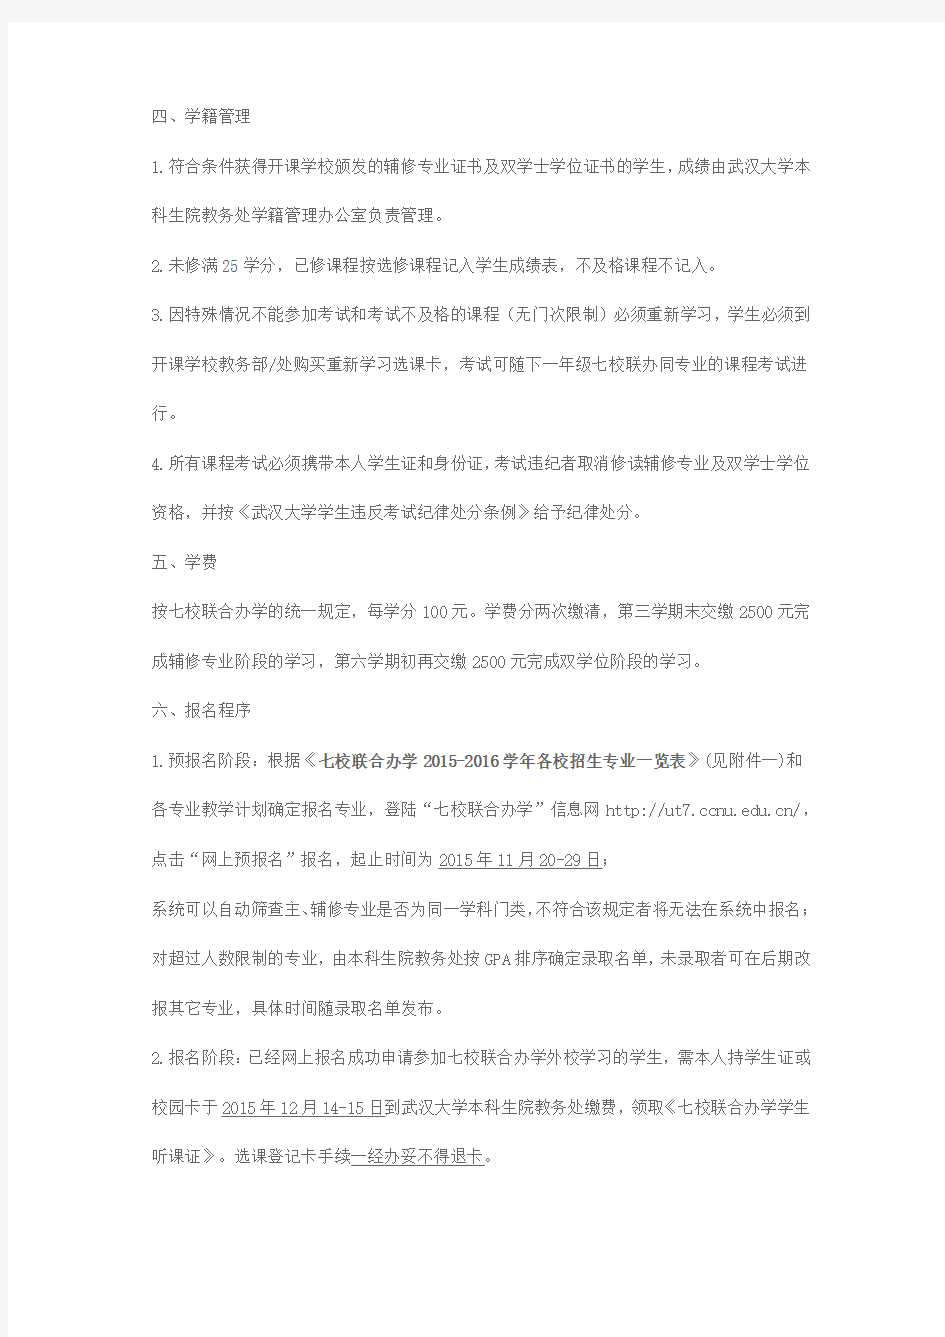 武汉大学关于2014级本科生修读辅修专业及双学位的通知